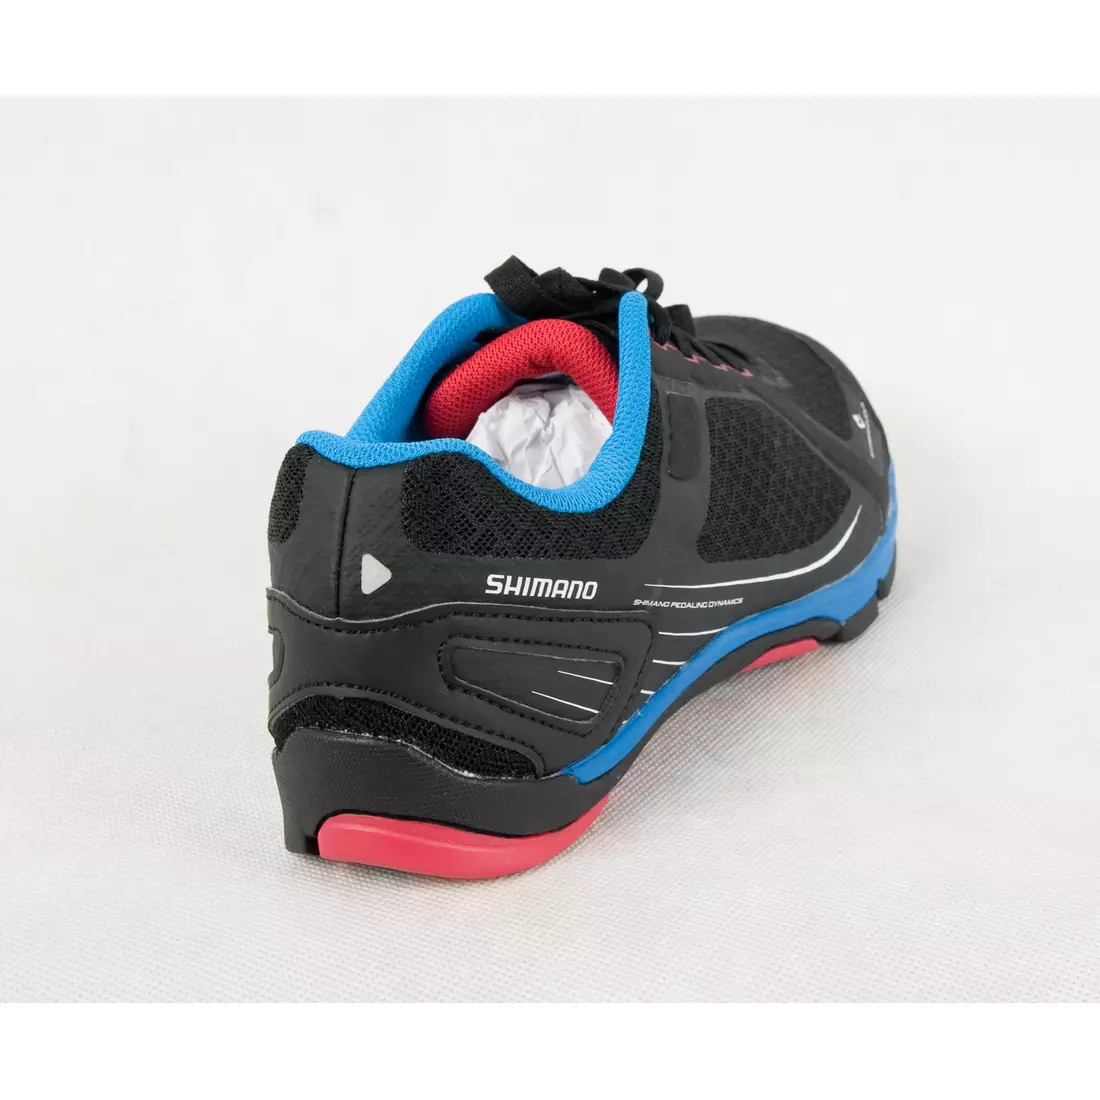 SHIMANO SH-CW41 - dámská cyklistická obuv, TREKKING - černá